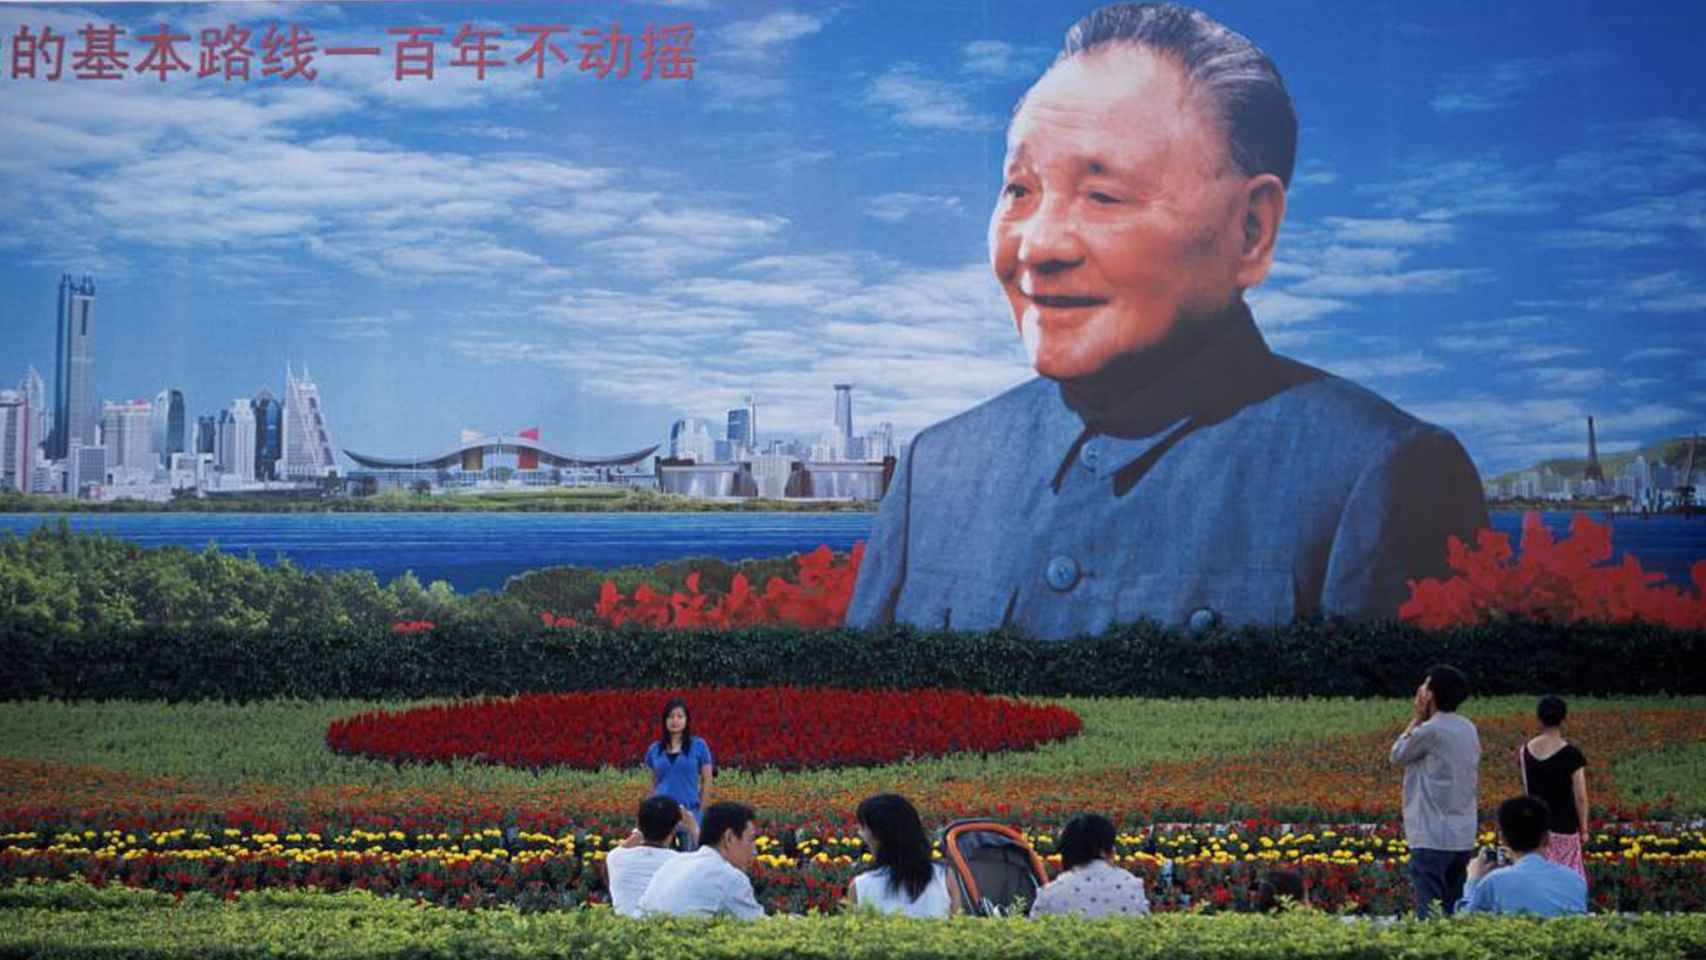 Cartel dedicado a Deng Xiaoping en la ciudad de Shenzhen.